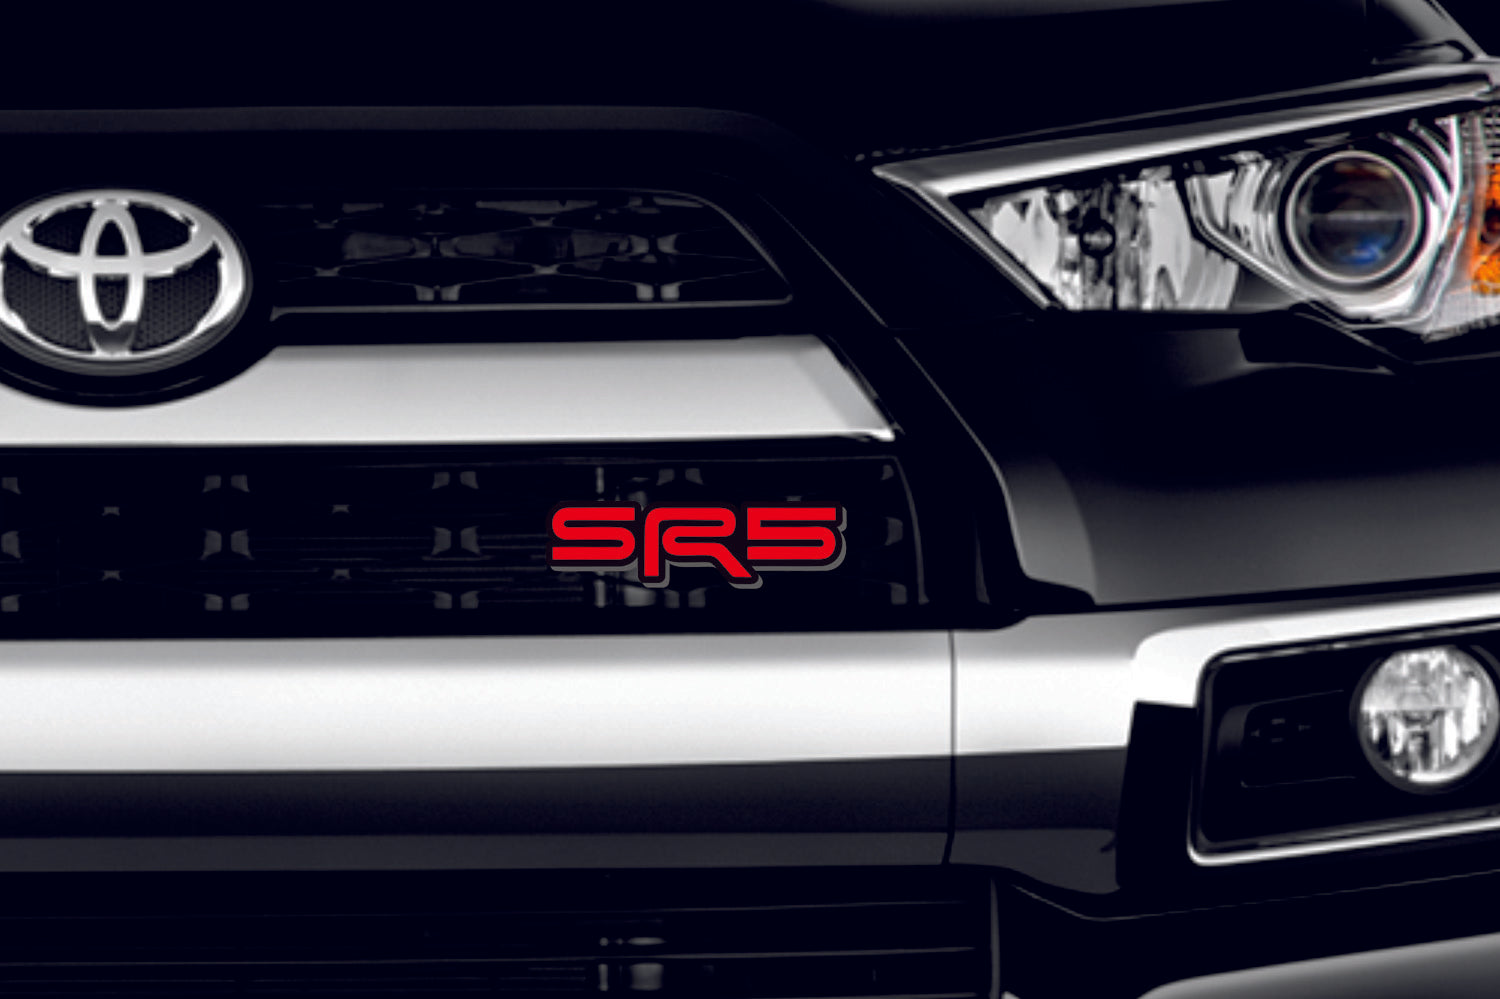 Emblema de la parrilla del radiador Toyota con el logotipo TRD